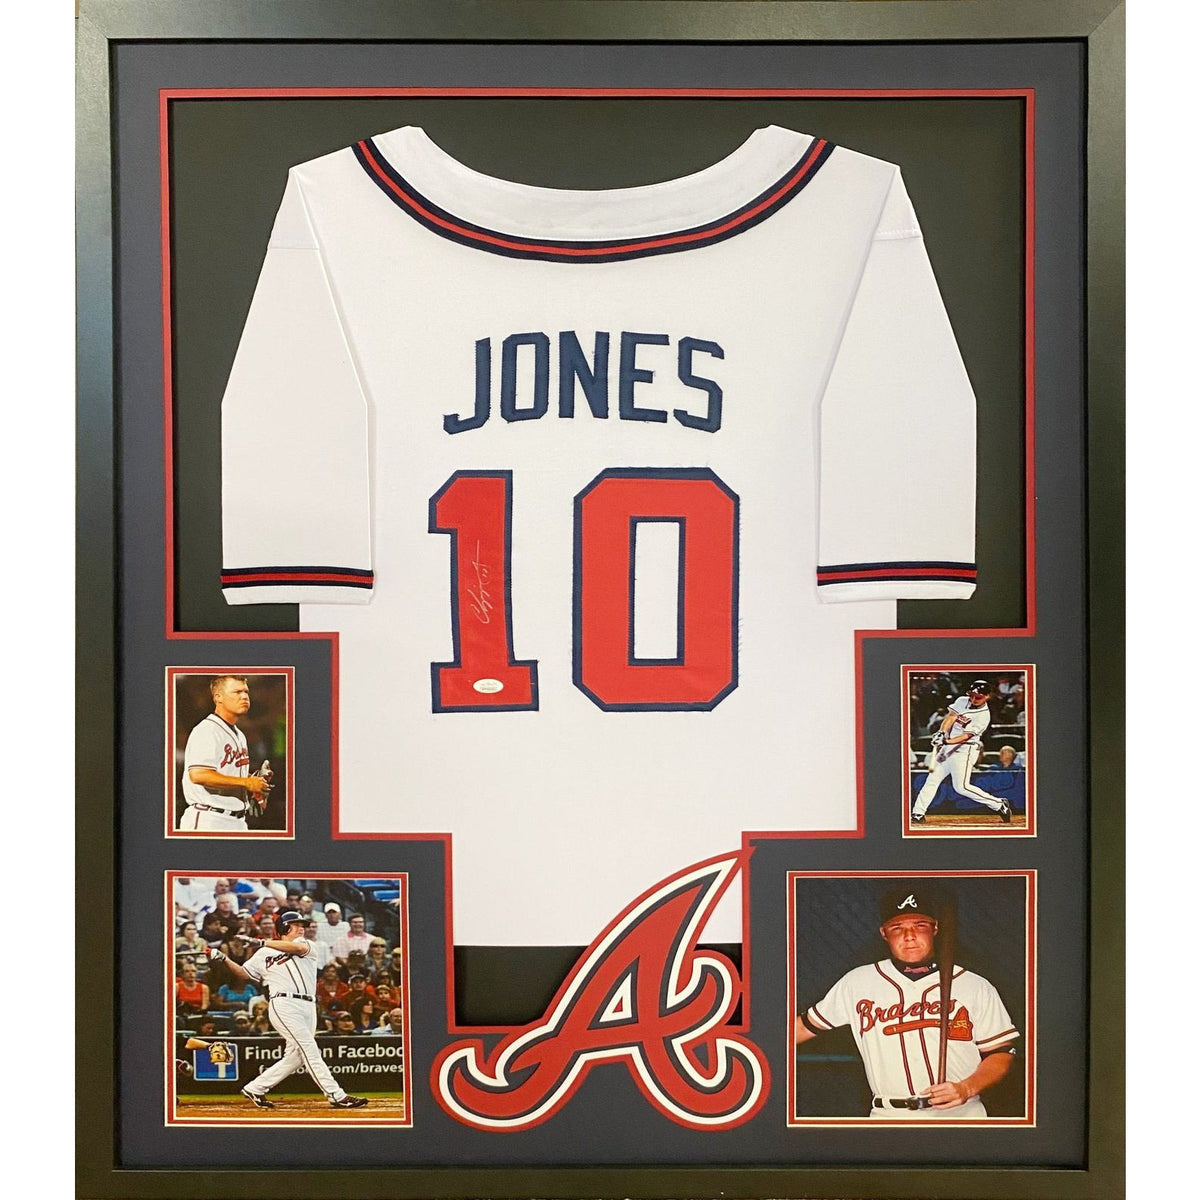 Chipper Jones Signed Framed Jersey JSA Autographed Atlanta Braves